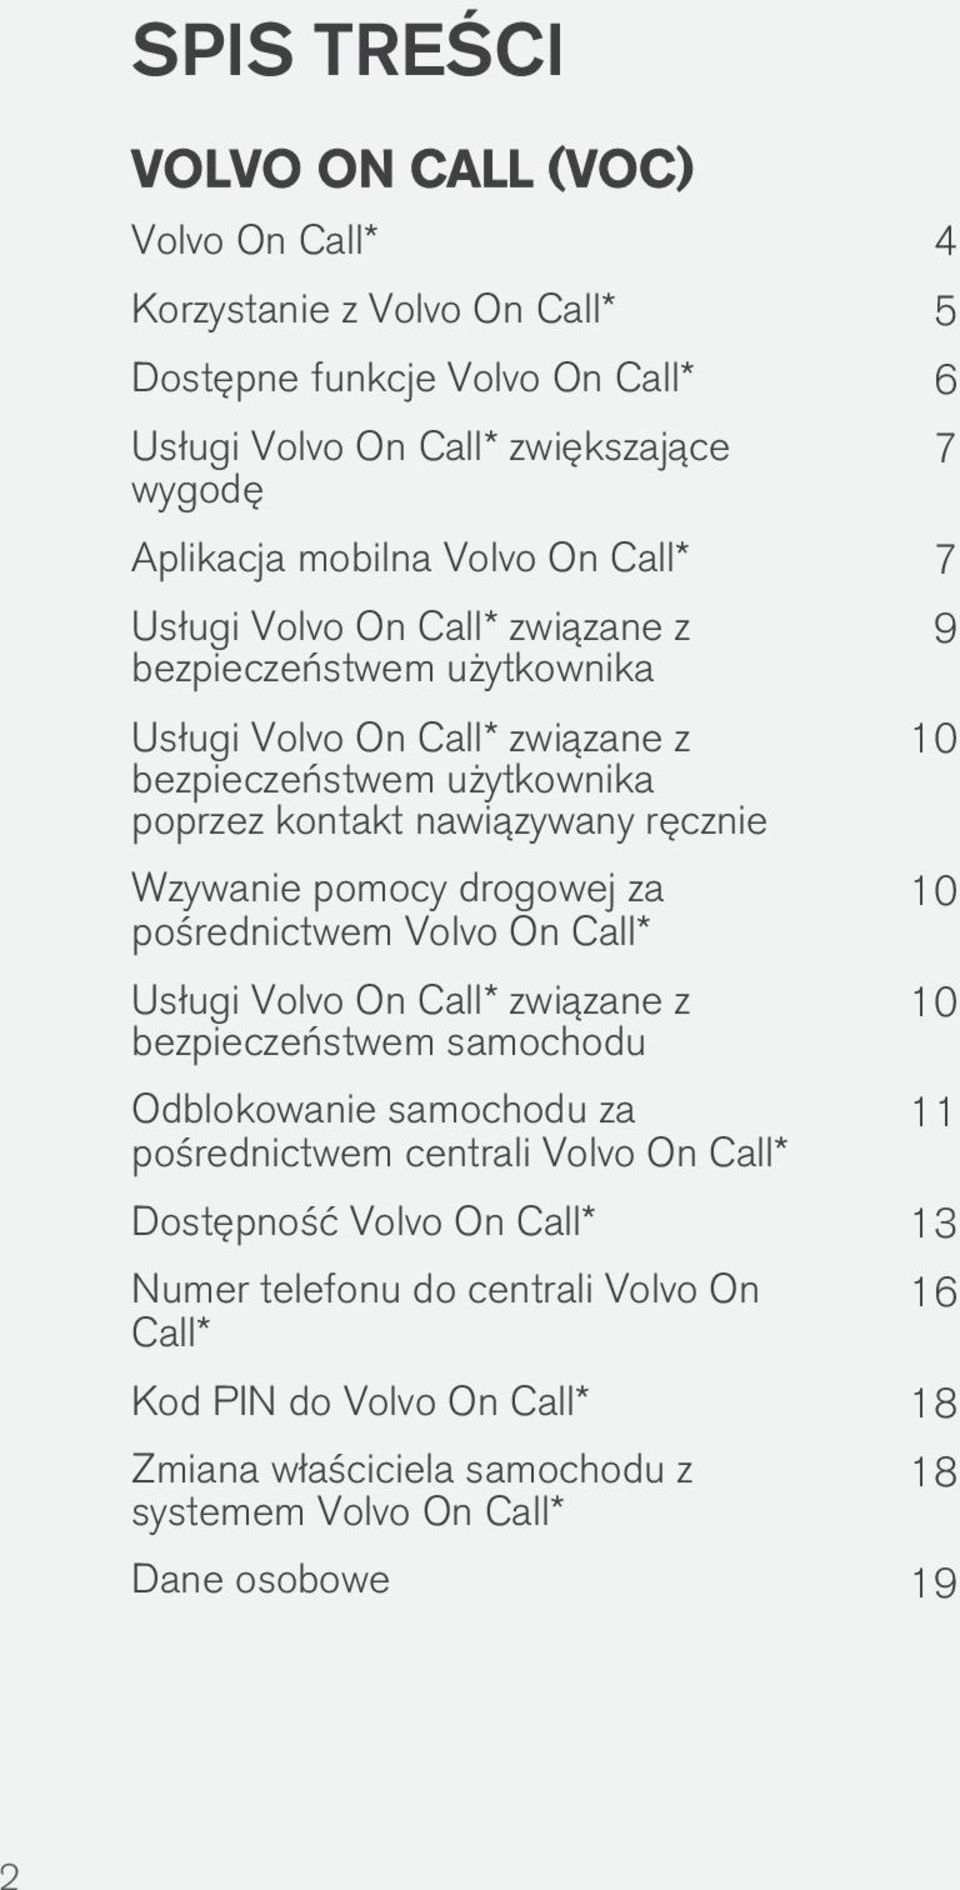 pomocy drogowej za pośrednictwem Volvo On Call* Usługi Volvo On Call* związane z bezpieczeństwem samochodu Odblokowanie samochodu za pośrednictwem centrali Volvo On Call* 7 9 10 10